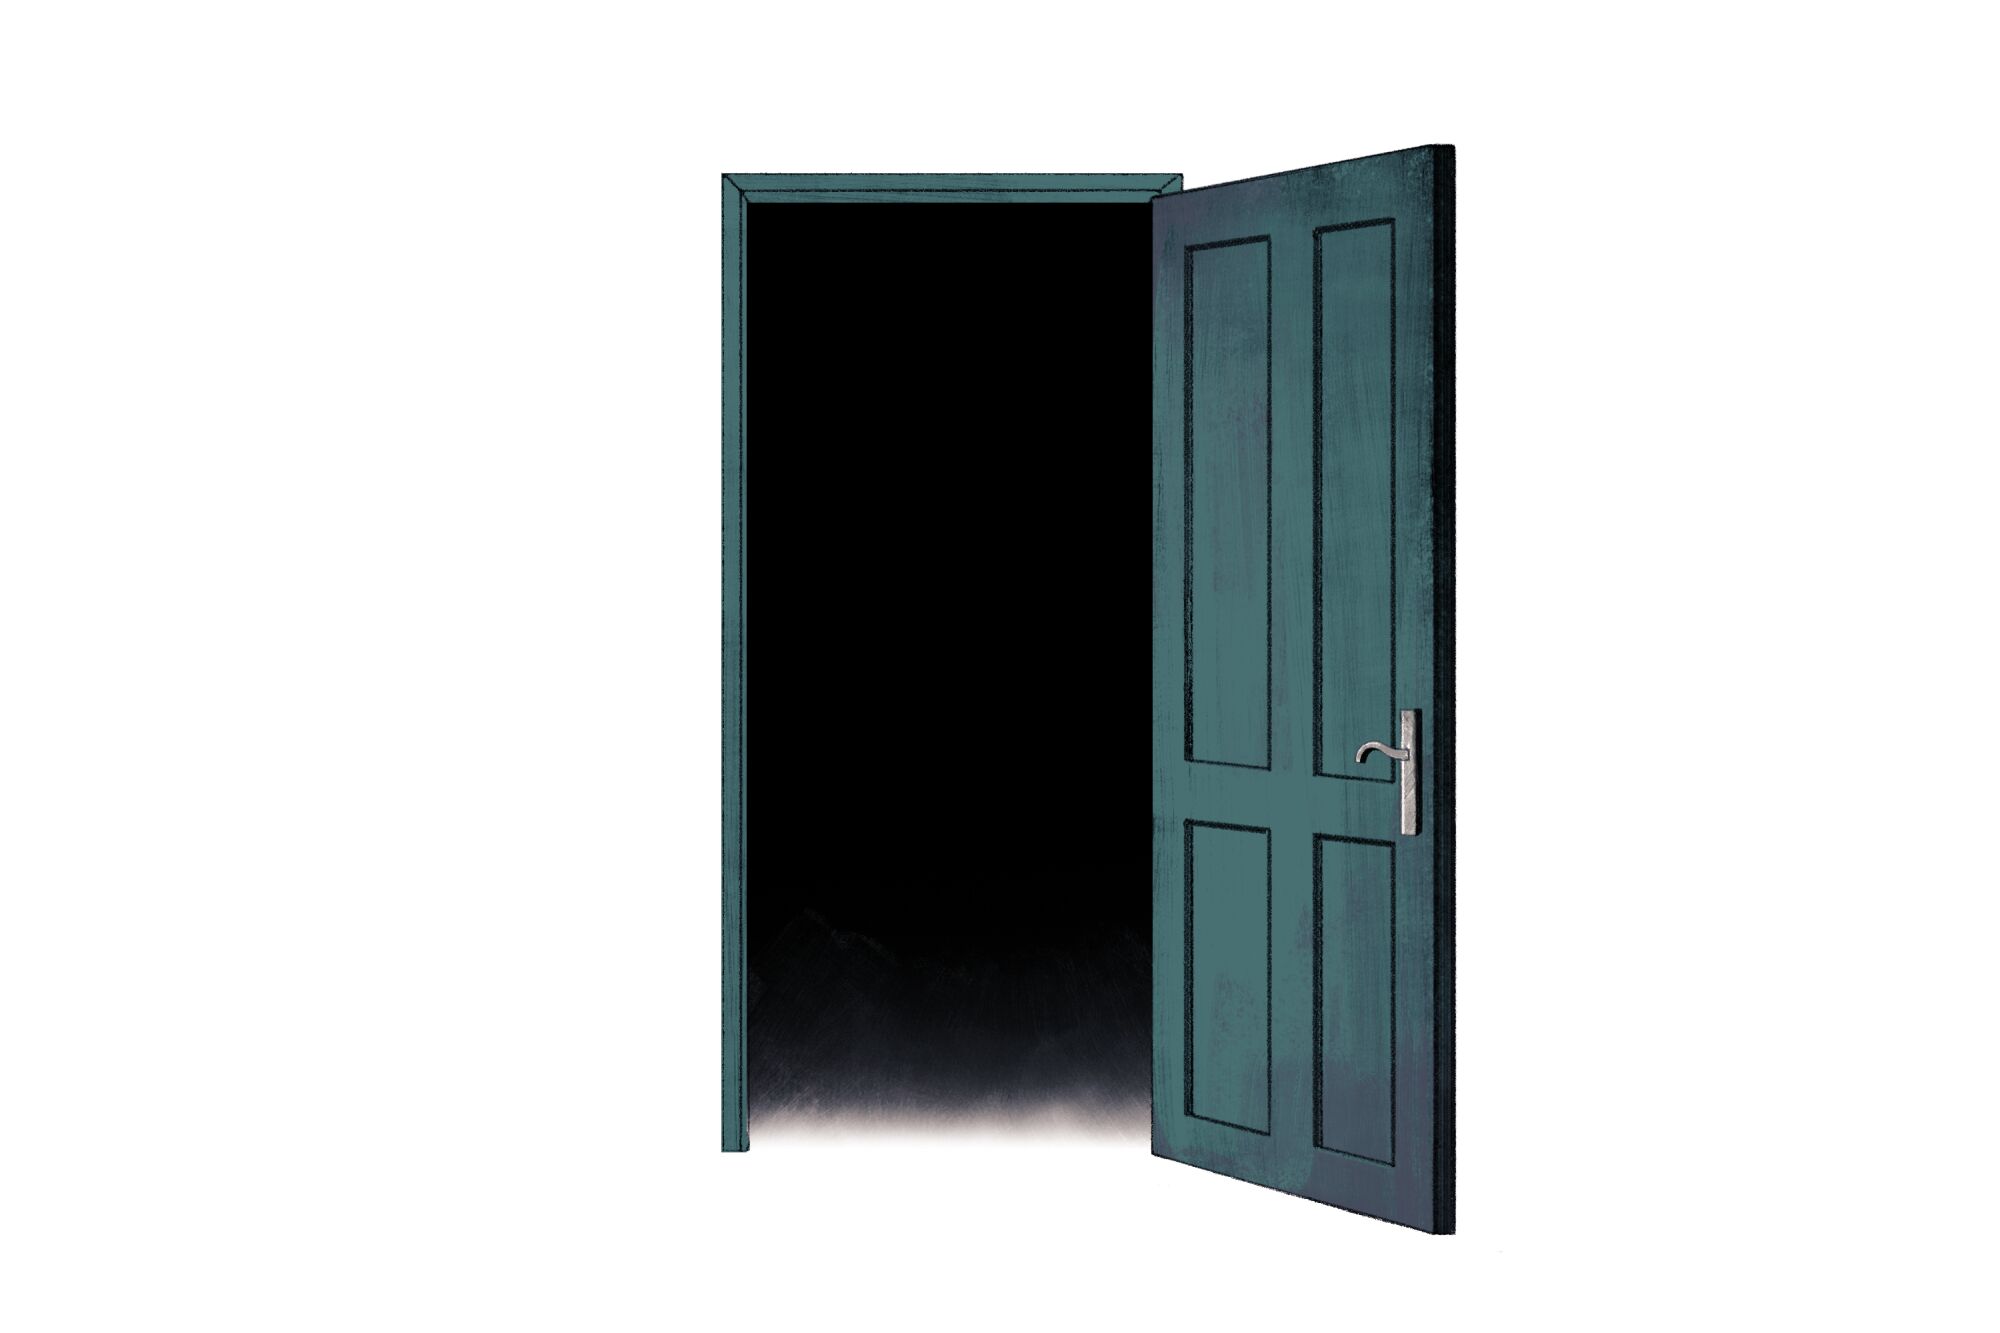 Illustration of a dark teal door open to black nothingness